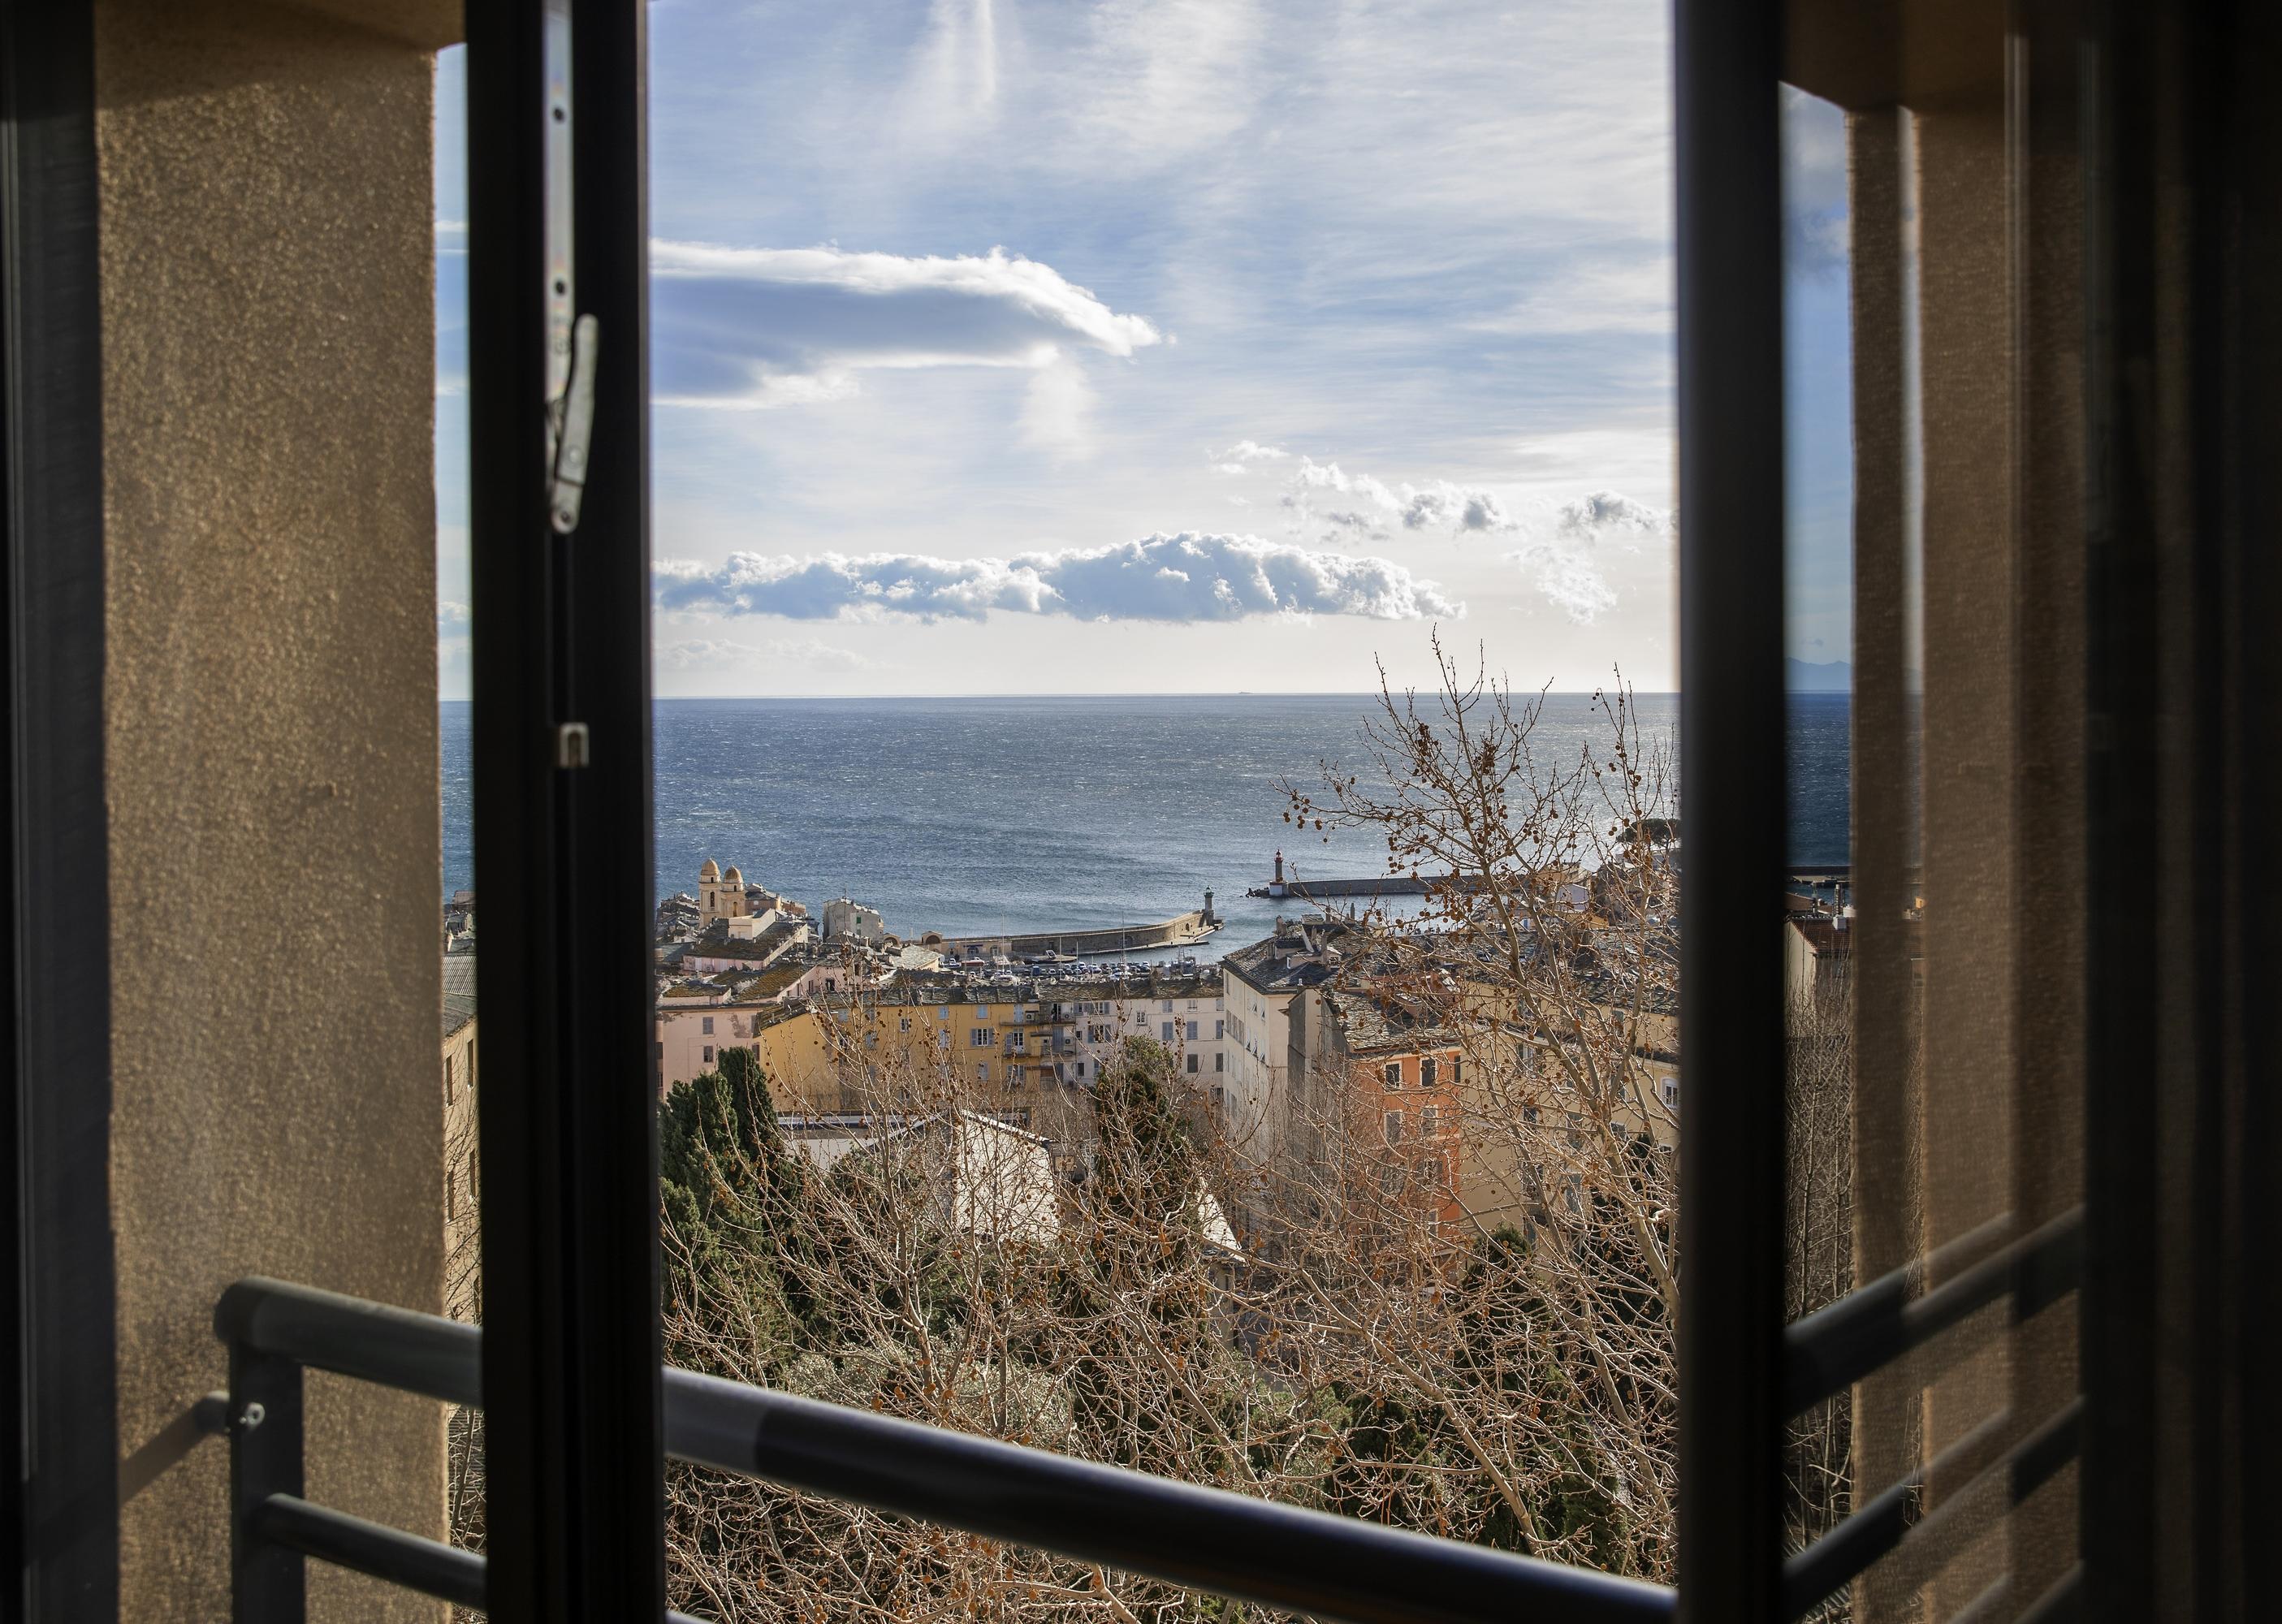 Hotel Le Bastia Bastia  Exterior photo